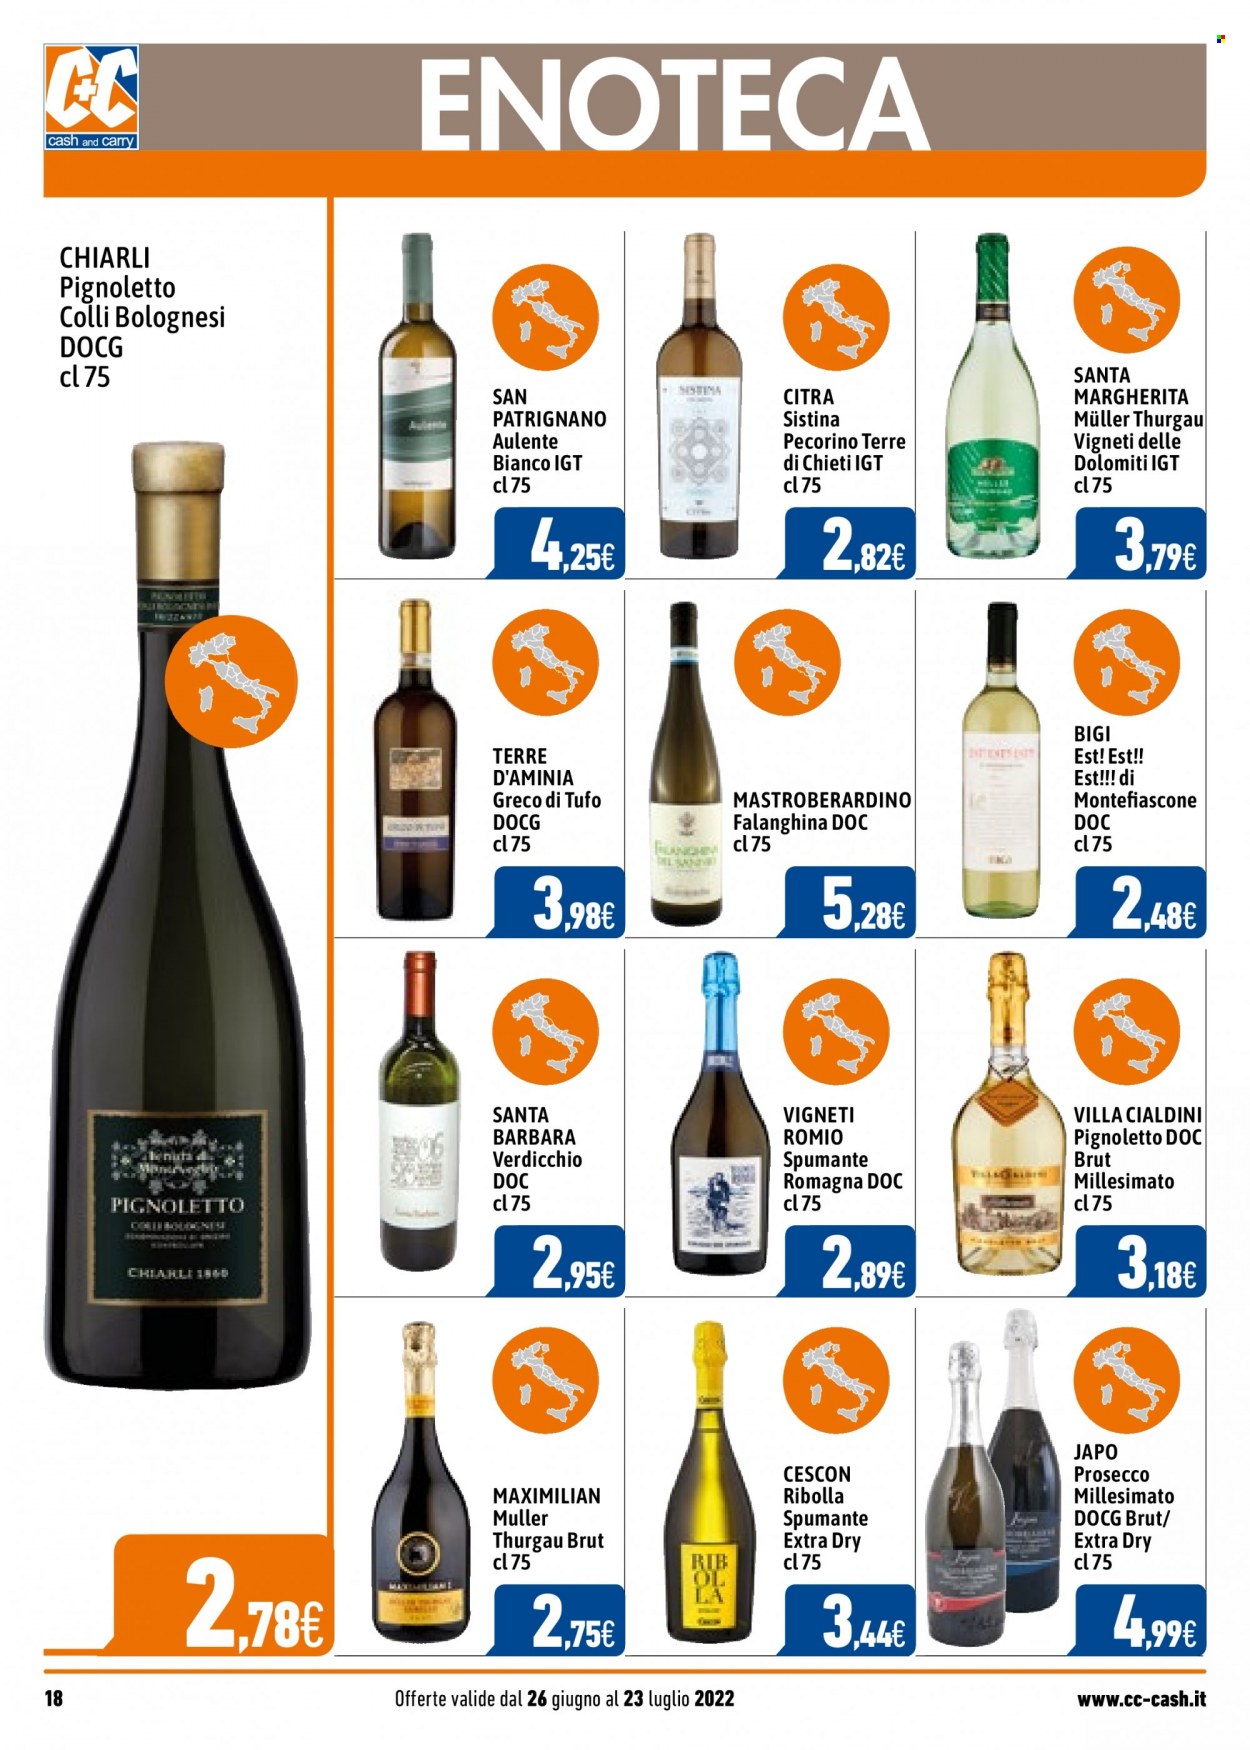 thumbnail - Volantino C+C Cash & Carry - 26/6/2022 - 23/7/2022 - Prodotti in offerta - vino bianco, Spumante, Prosecco, Müller-Thurgau, vino, Pecorino Terre di Chieti, Verdicchio, Pignoletto. Pagina 18.